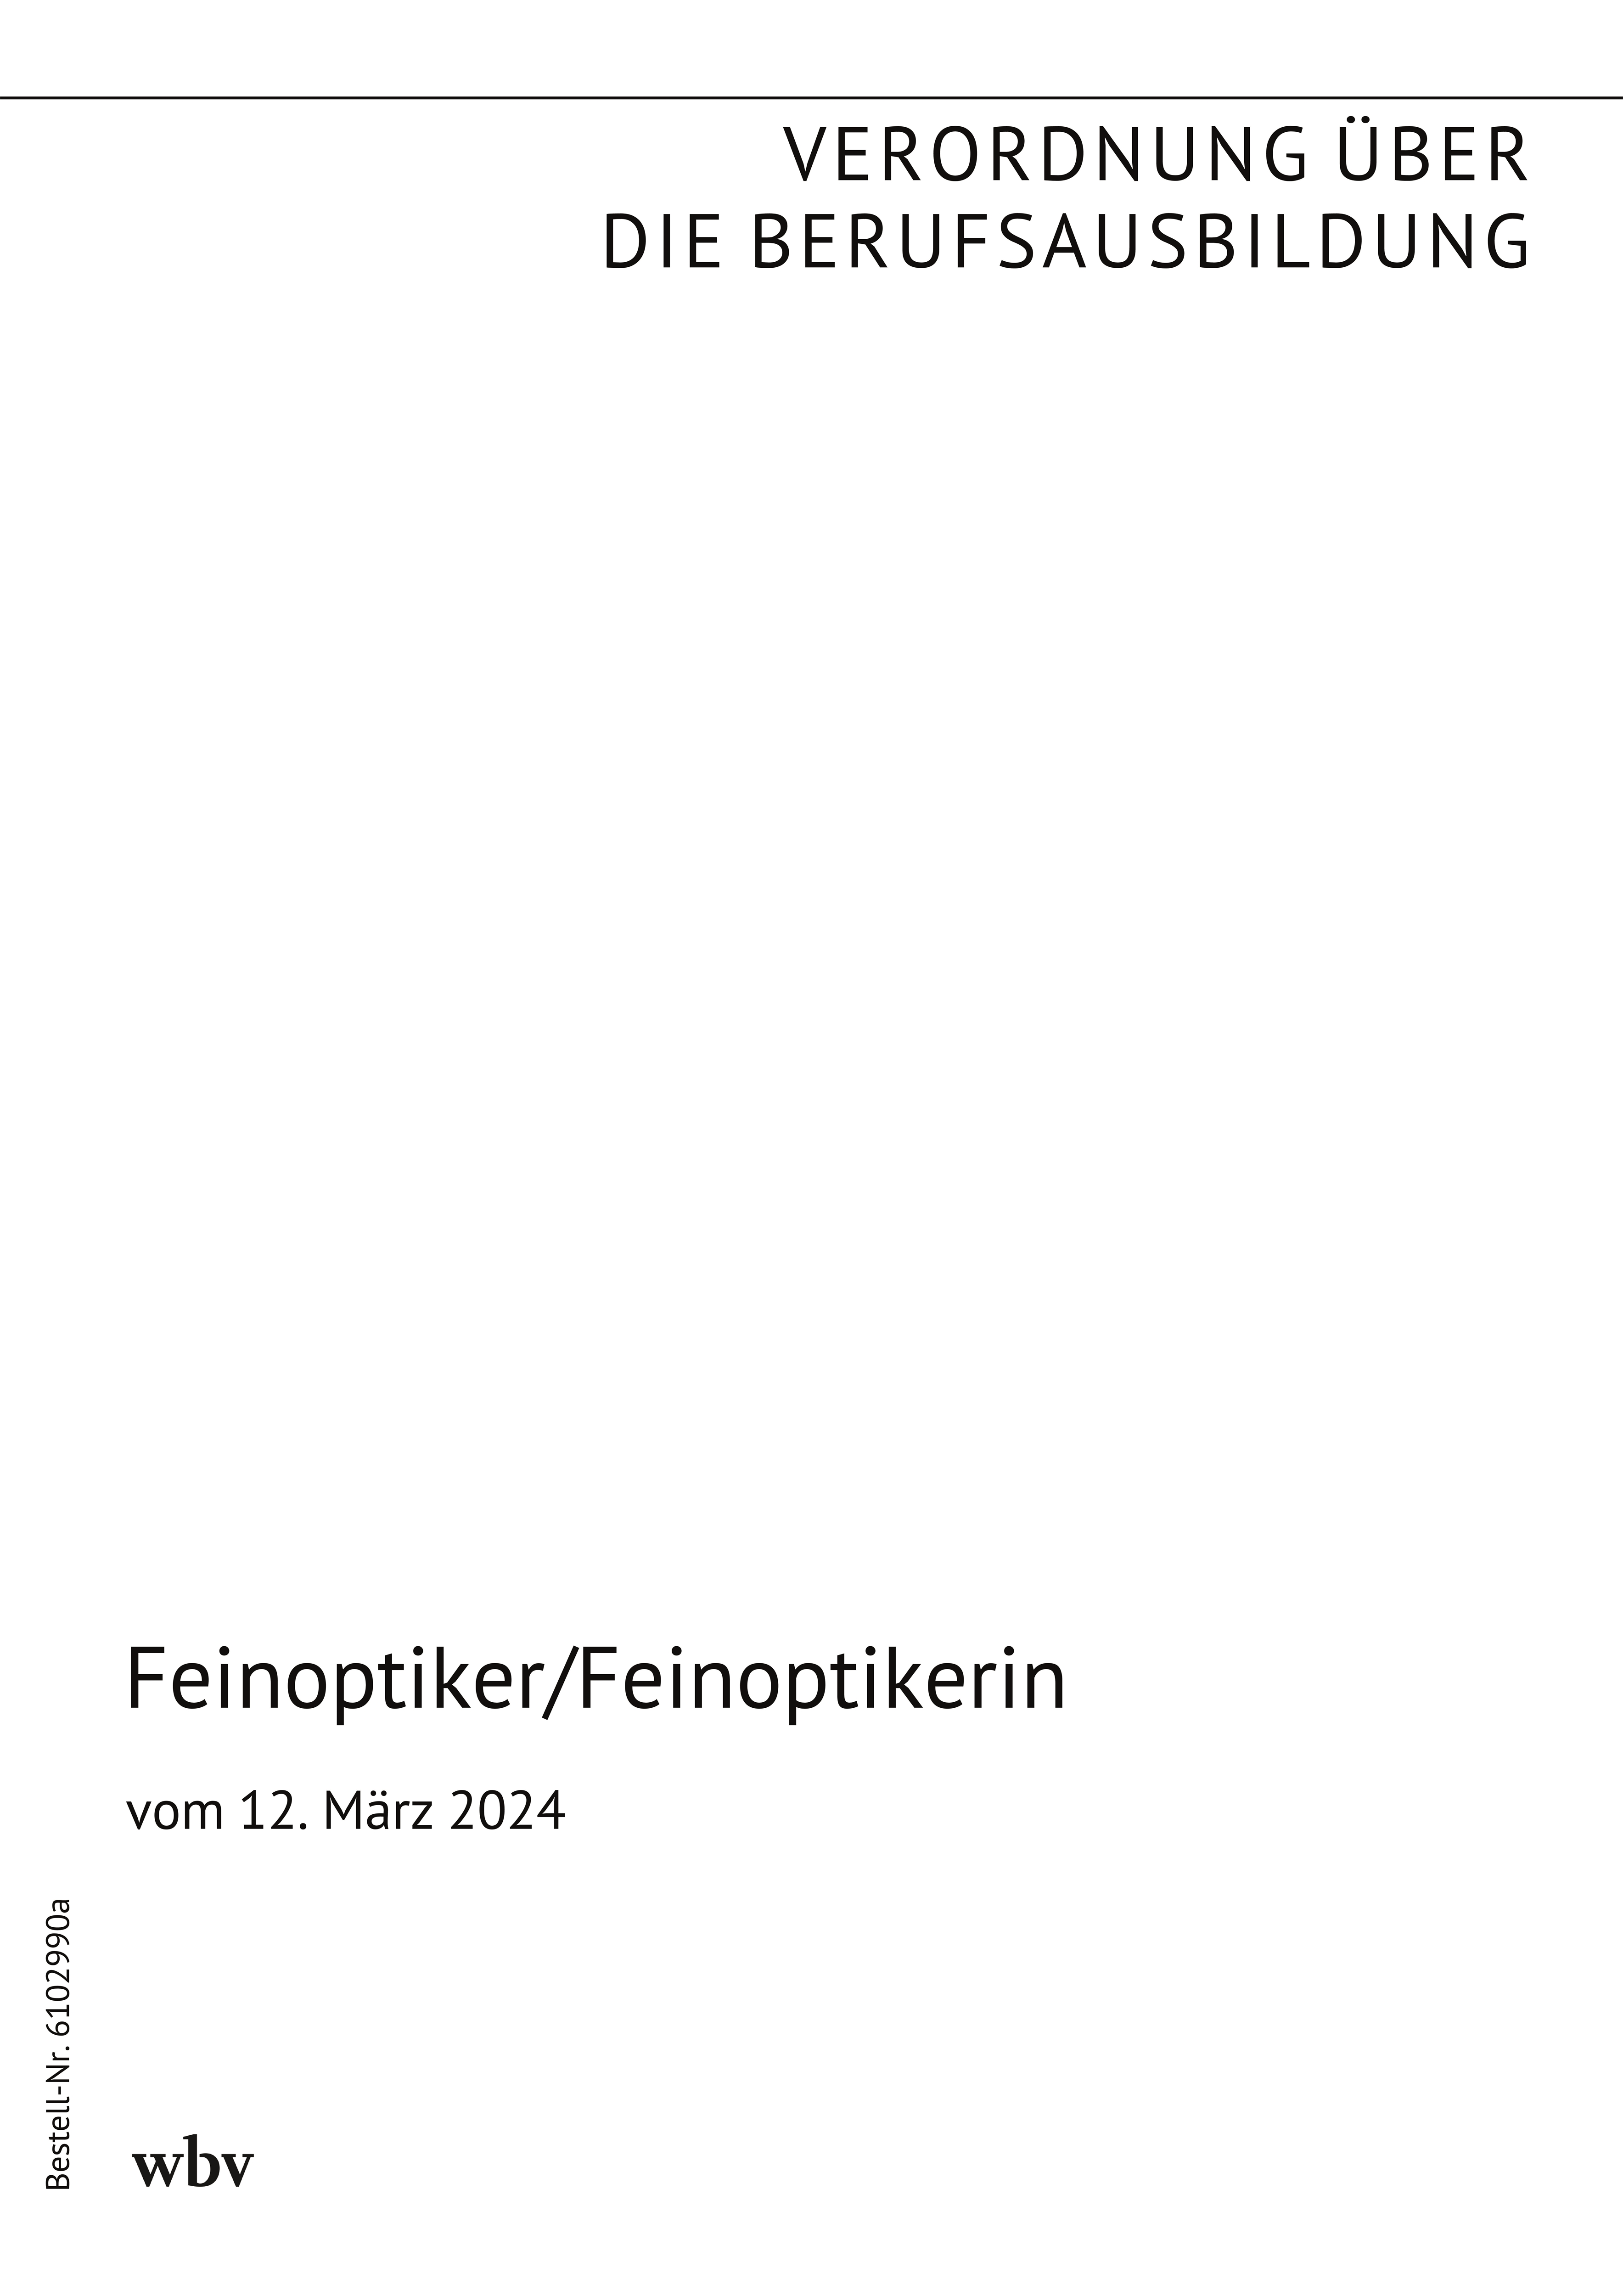 Feinoptiker/Feinoptikerin